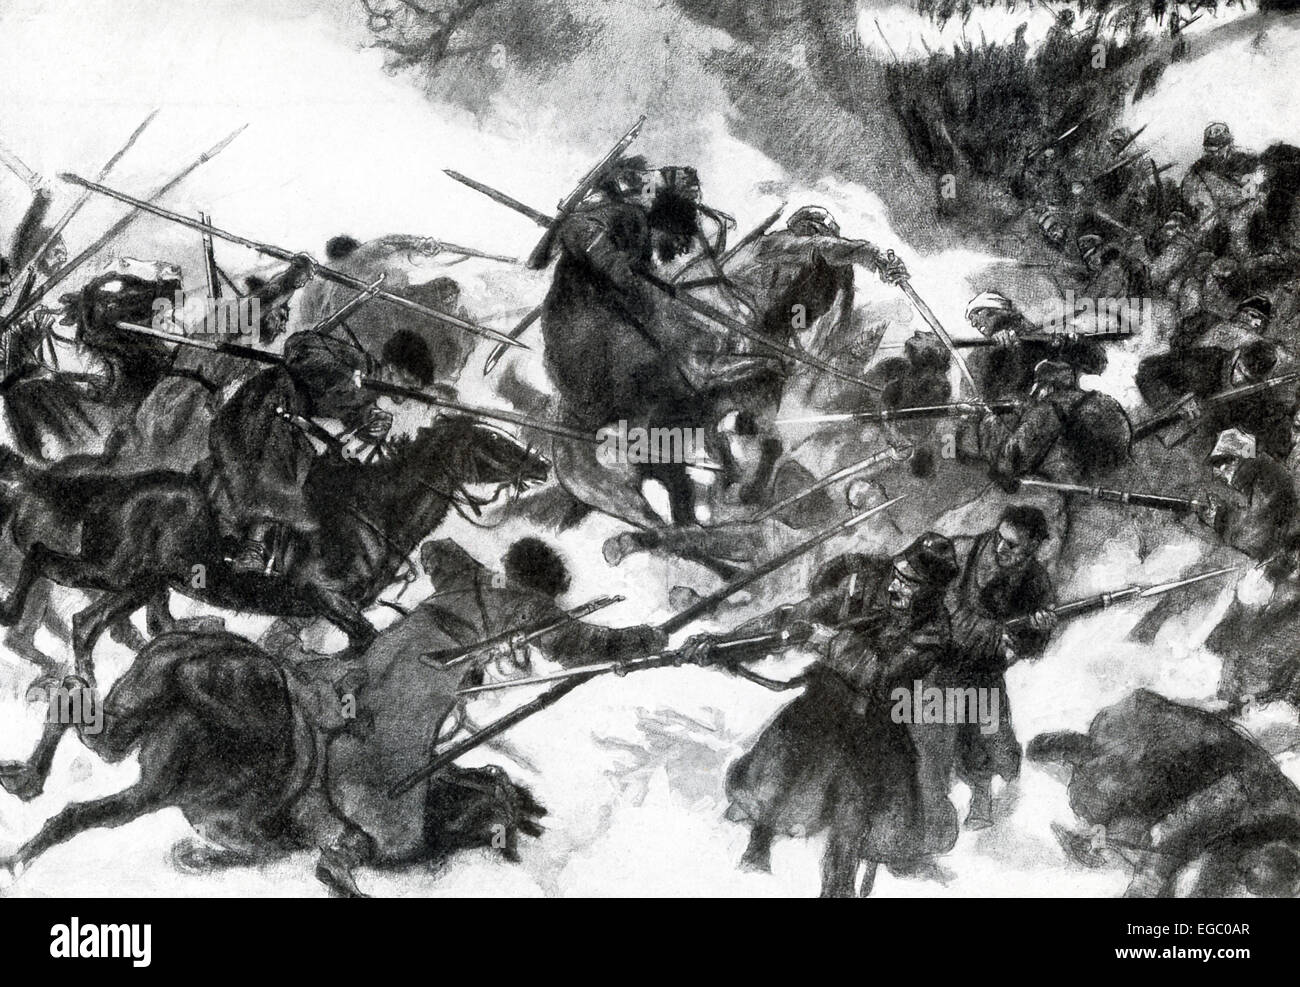 Dans cette illustration, 1917 Les Cosaques sont indiqués en conflit avec cavalerie autrichienne pendant la Première Guerre mondiale. Vers la fin de 1914, la Russie a déployé les Cosaques pour combattre sur le front de l'Ouest contre les soldats allemands et austro-hongrois. En été 1915, l'armée russe était en pleine retraite. Banque D'Images